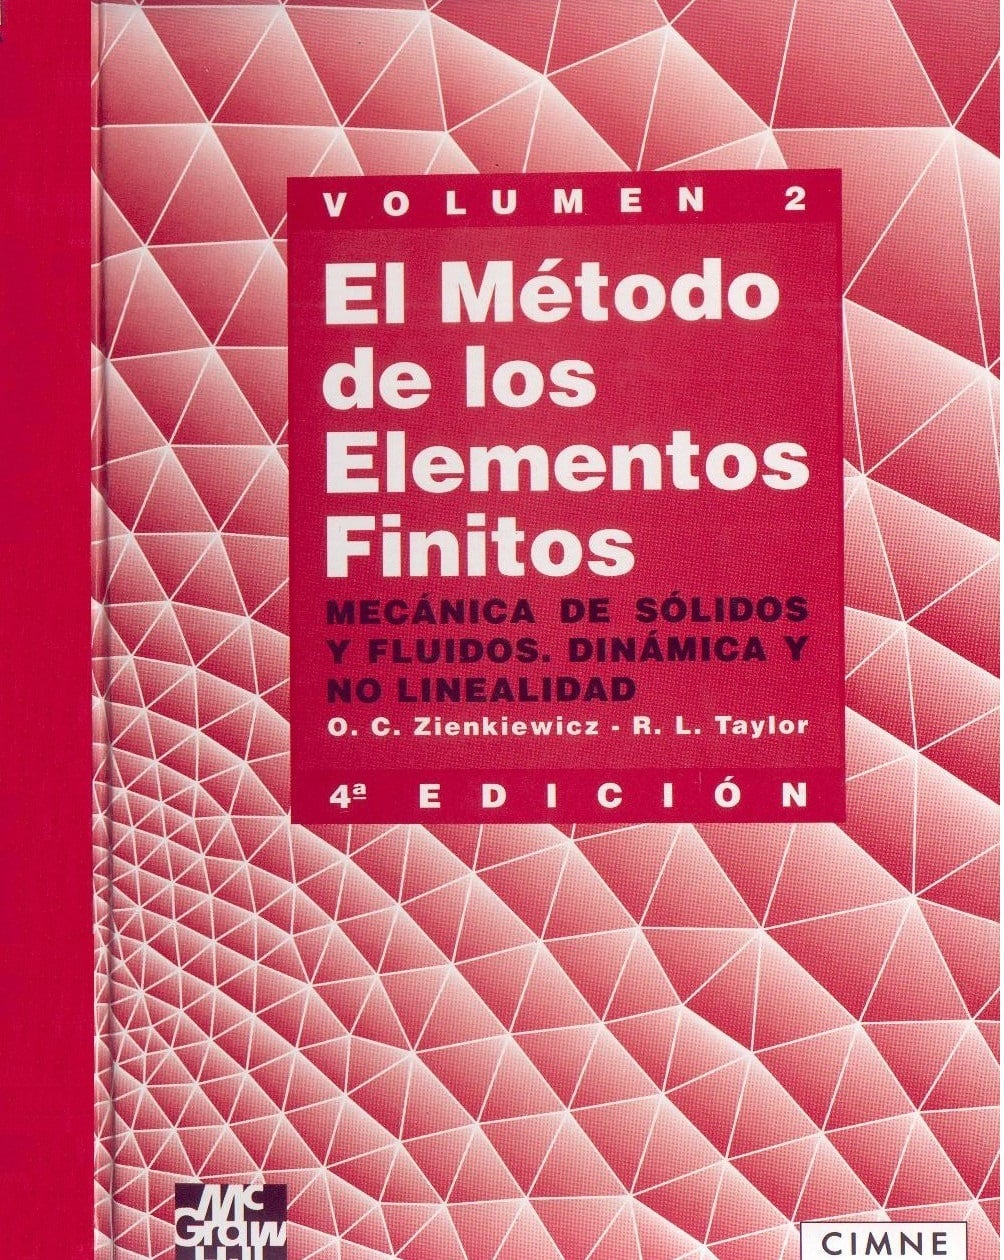 El Método de los Elementos Finitos Vol. 2 4 Edición O. C. Zienkiewicz PDF